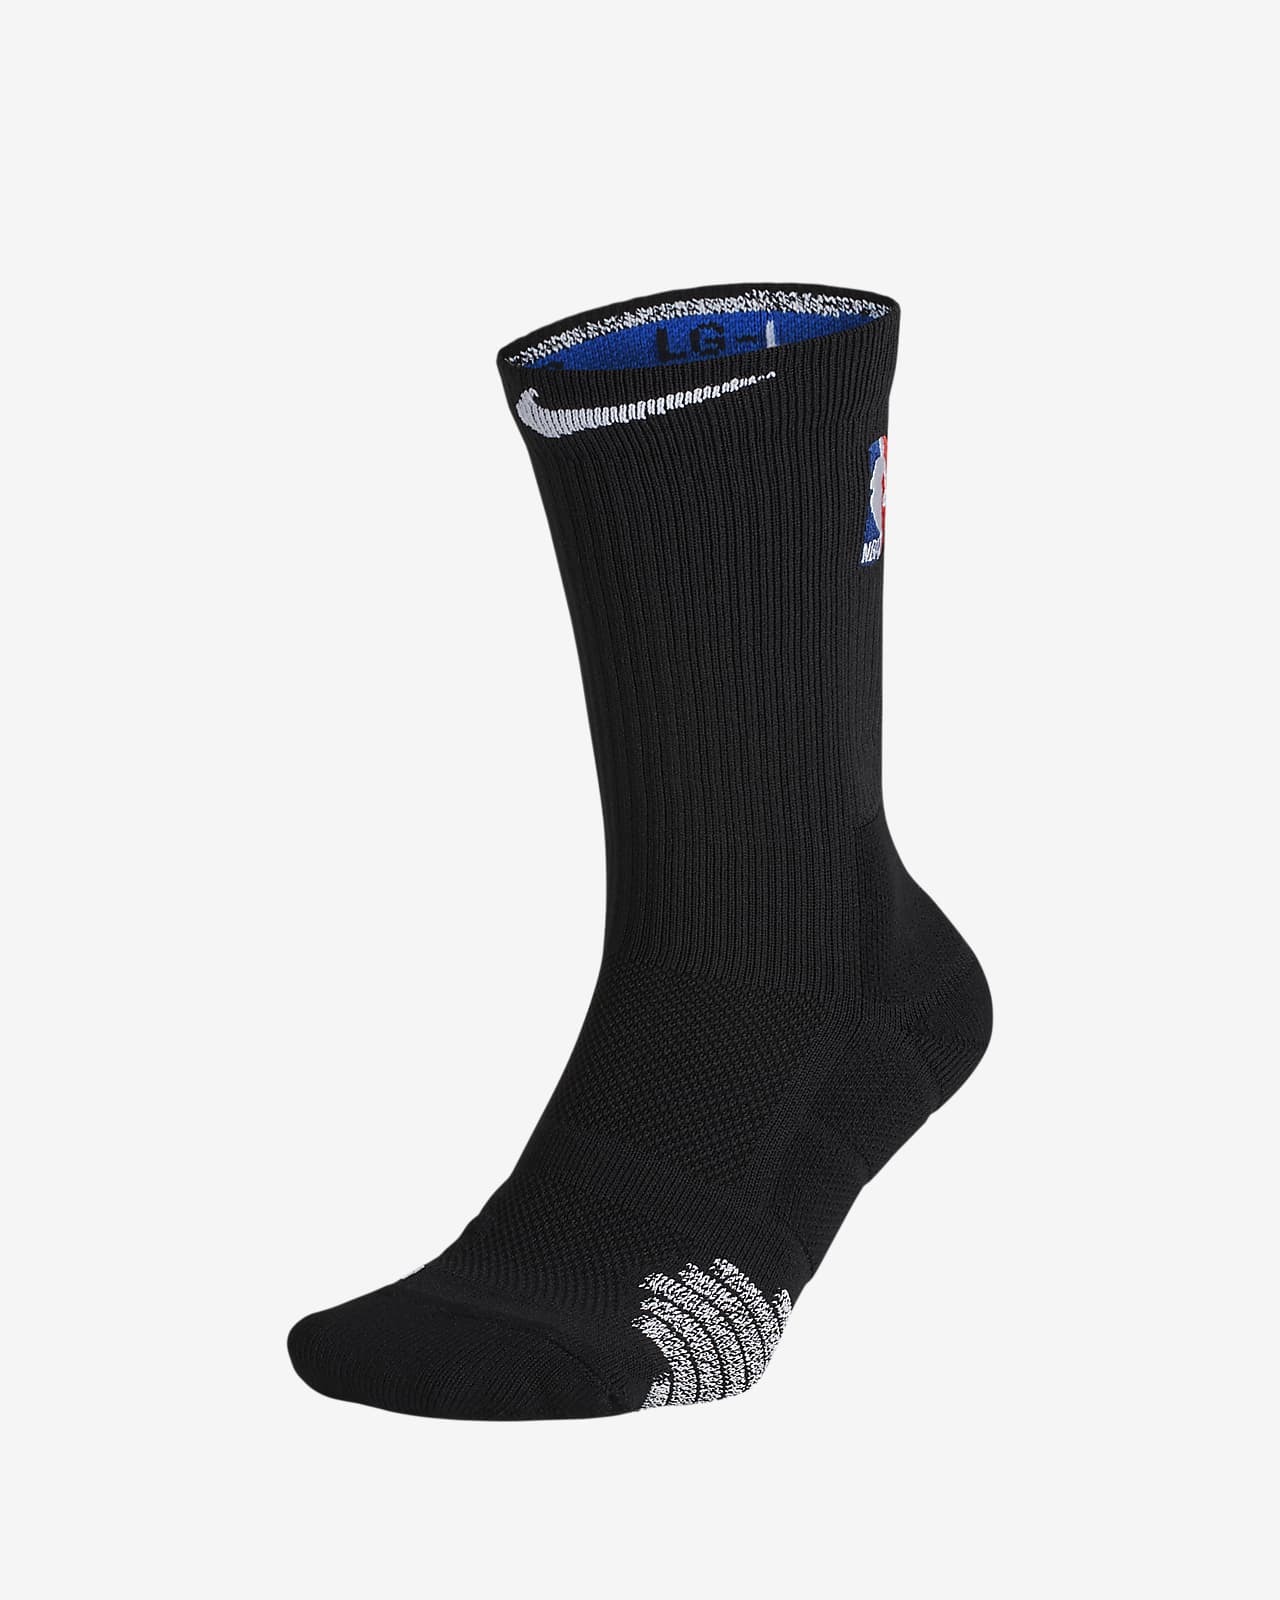 nike grip elite socks